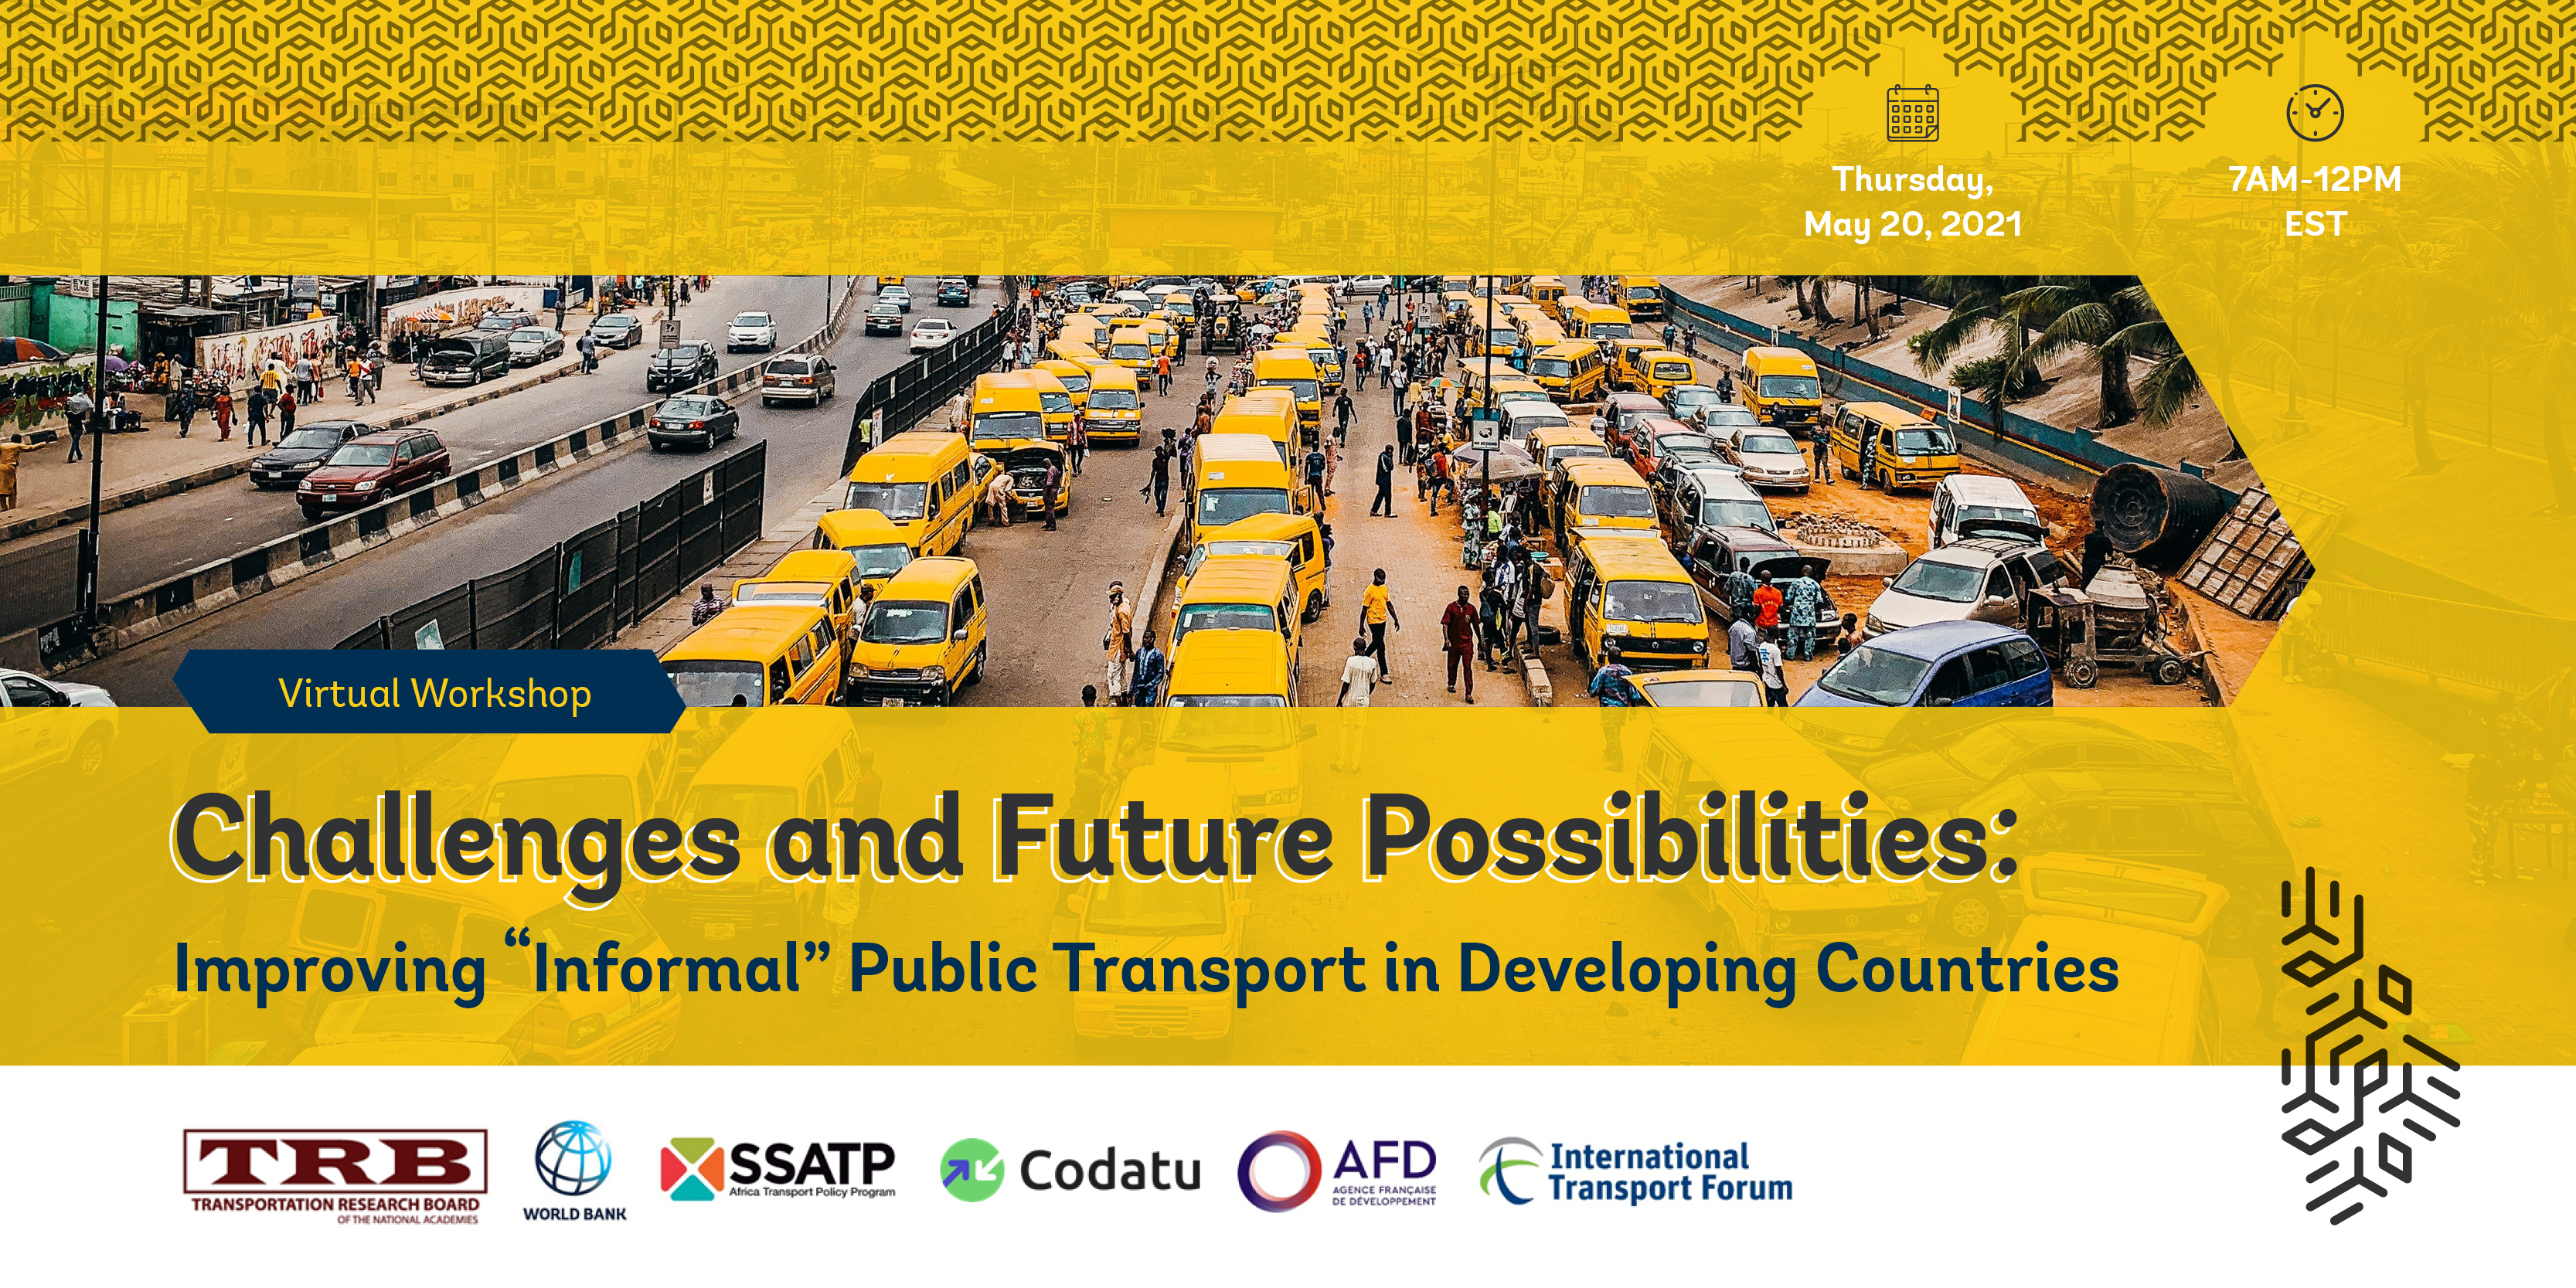 Workshop on "Informal" Public Transit